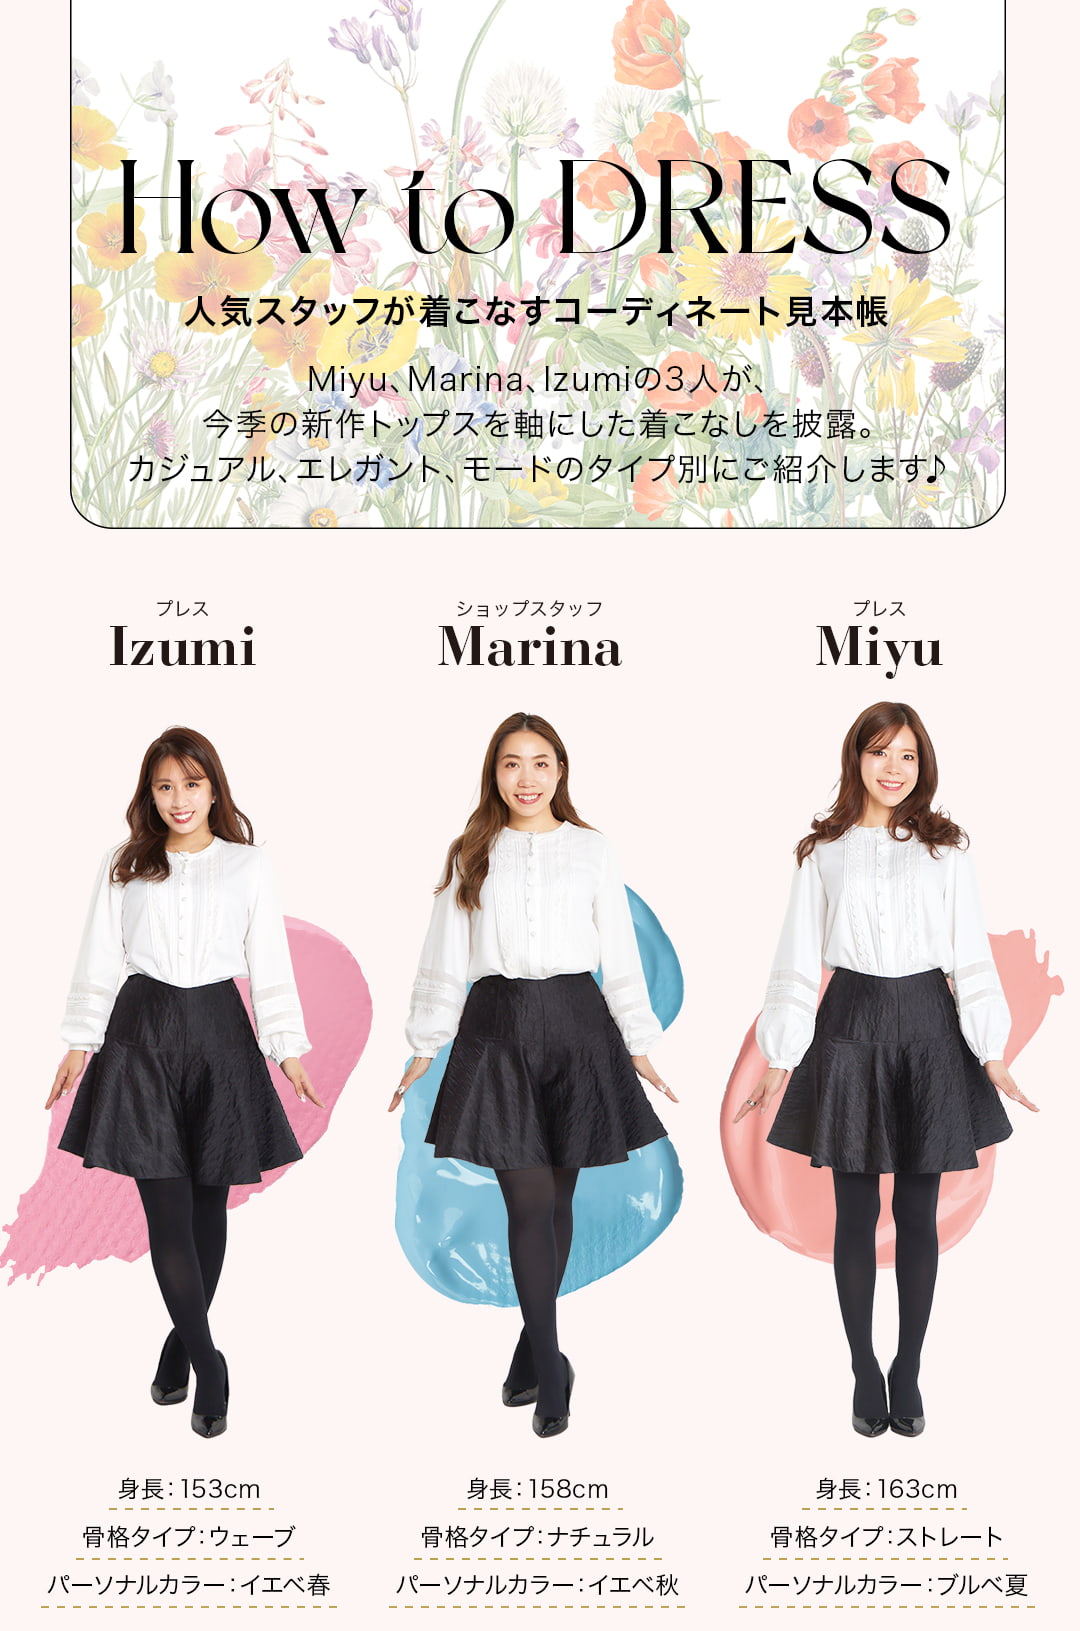 How to DRESS人気スタッフが着こなすコーディネート見本帳。Miyu、Marina、Izumiの3人が、今季の新作トップスを軸にした着こなしを披露。カジュアル、エレガント、モードのタイプ別にご紹介します♪（左）プレスIzumi・・・身長：153cm／骨格タイプ：ウェーブ／パーソナルカラー：イエベ春、（真ん中）ショップスタッフMarina・・・身長：158cm／骨格タイプ：ナチュラル／パーソナルカラー：イエベ秋、（右）プレスMiyu・・・身長：163cm／骨格タイプ：ストレート／パーソナルカラー：ブルベ夏